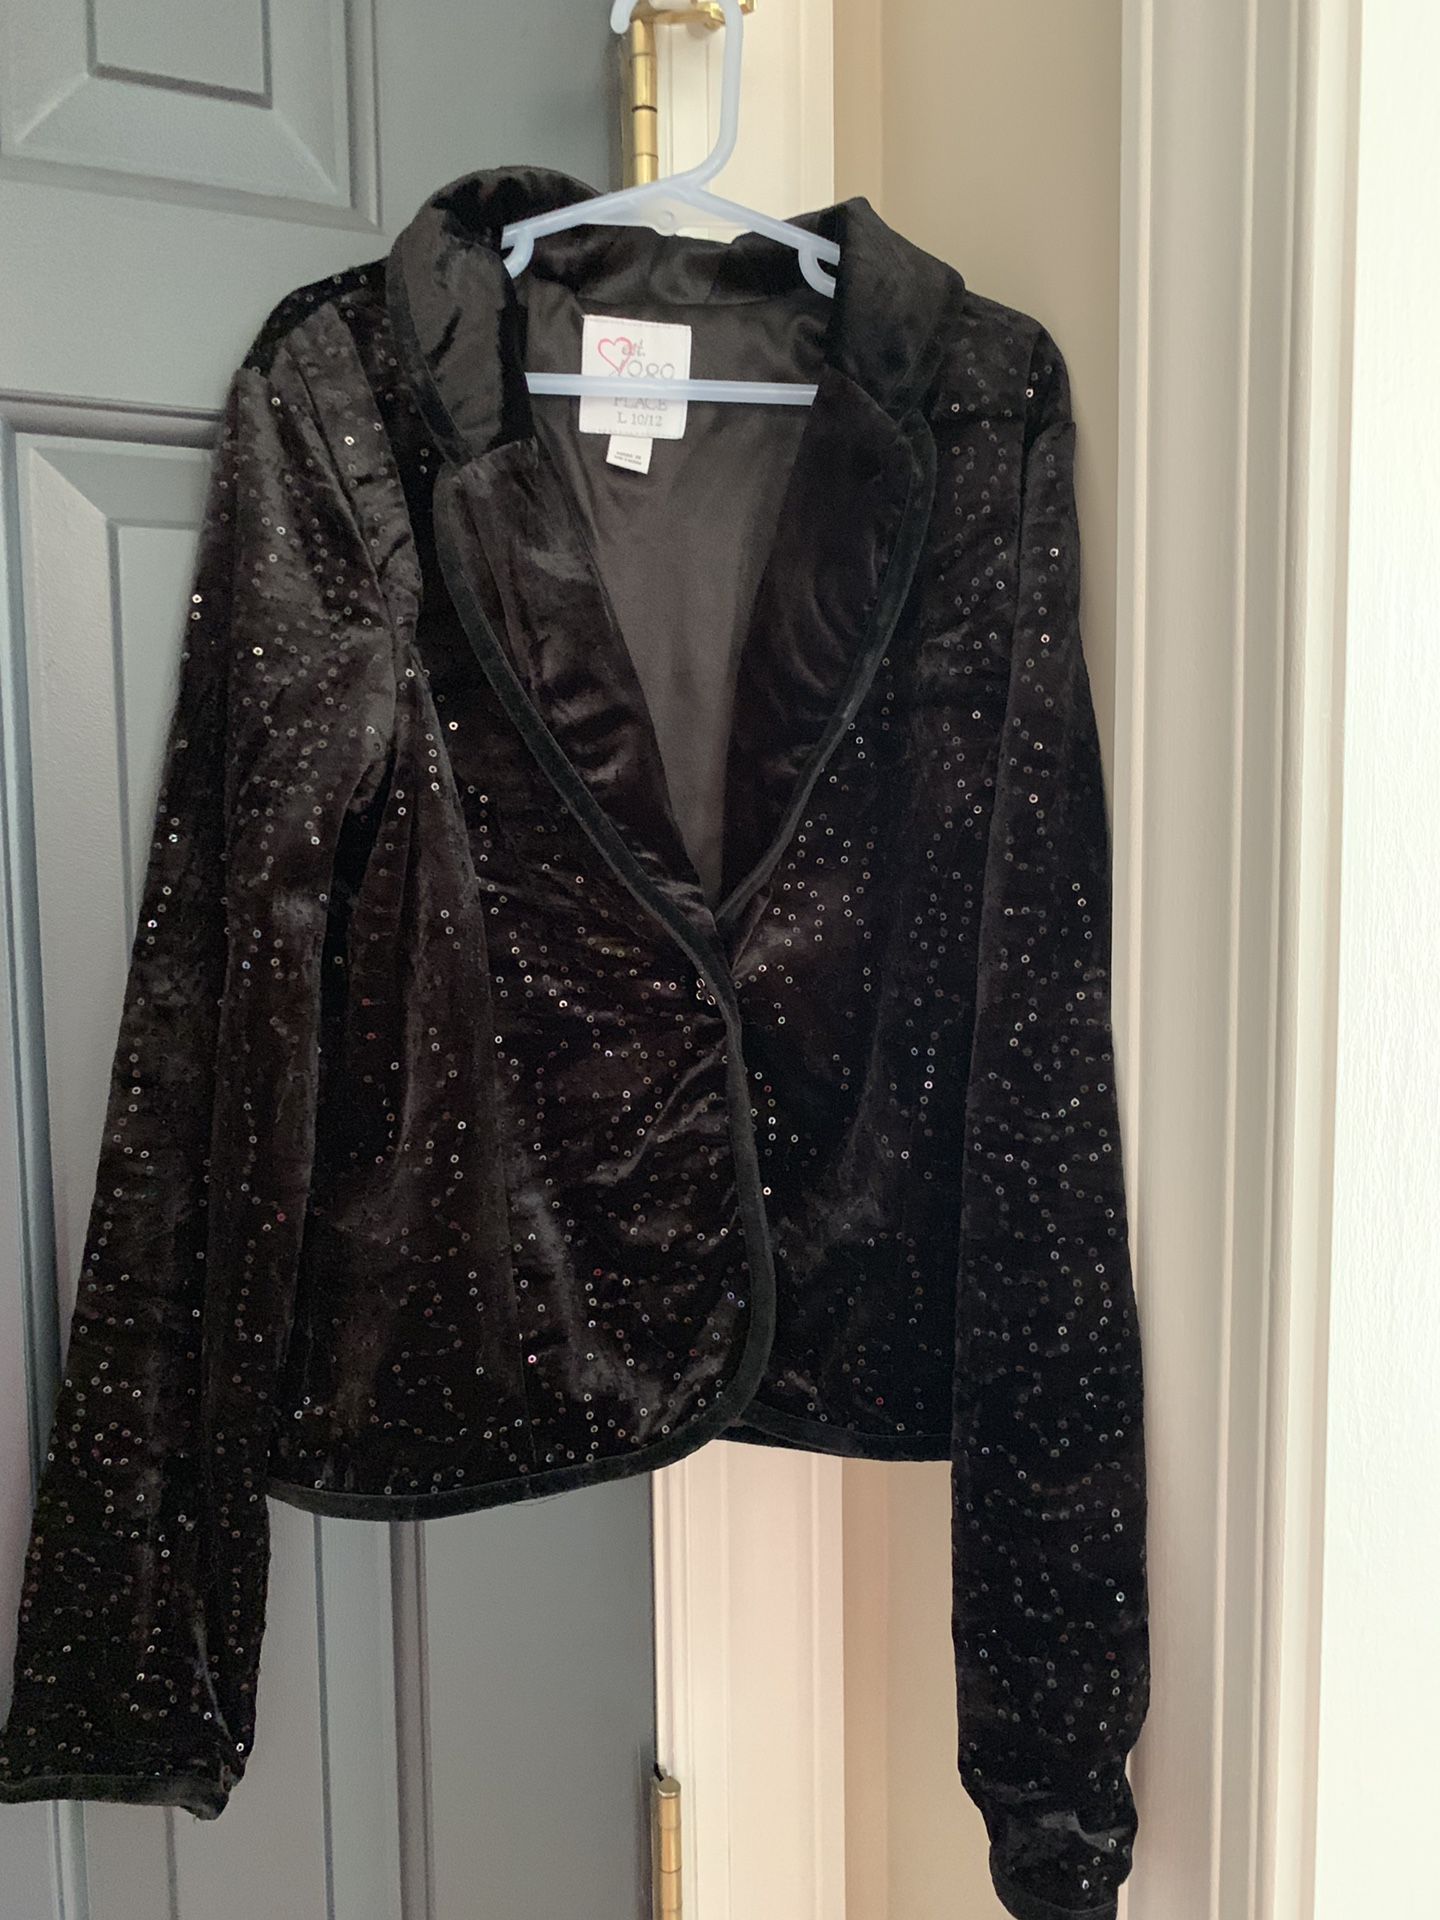 Girl size 10/12 black jacket